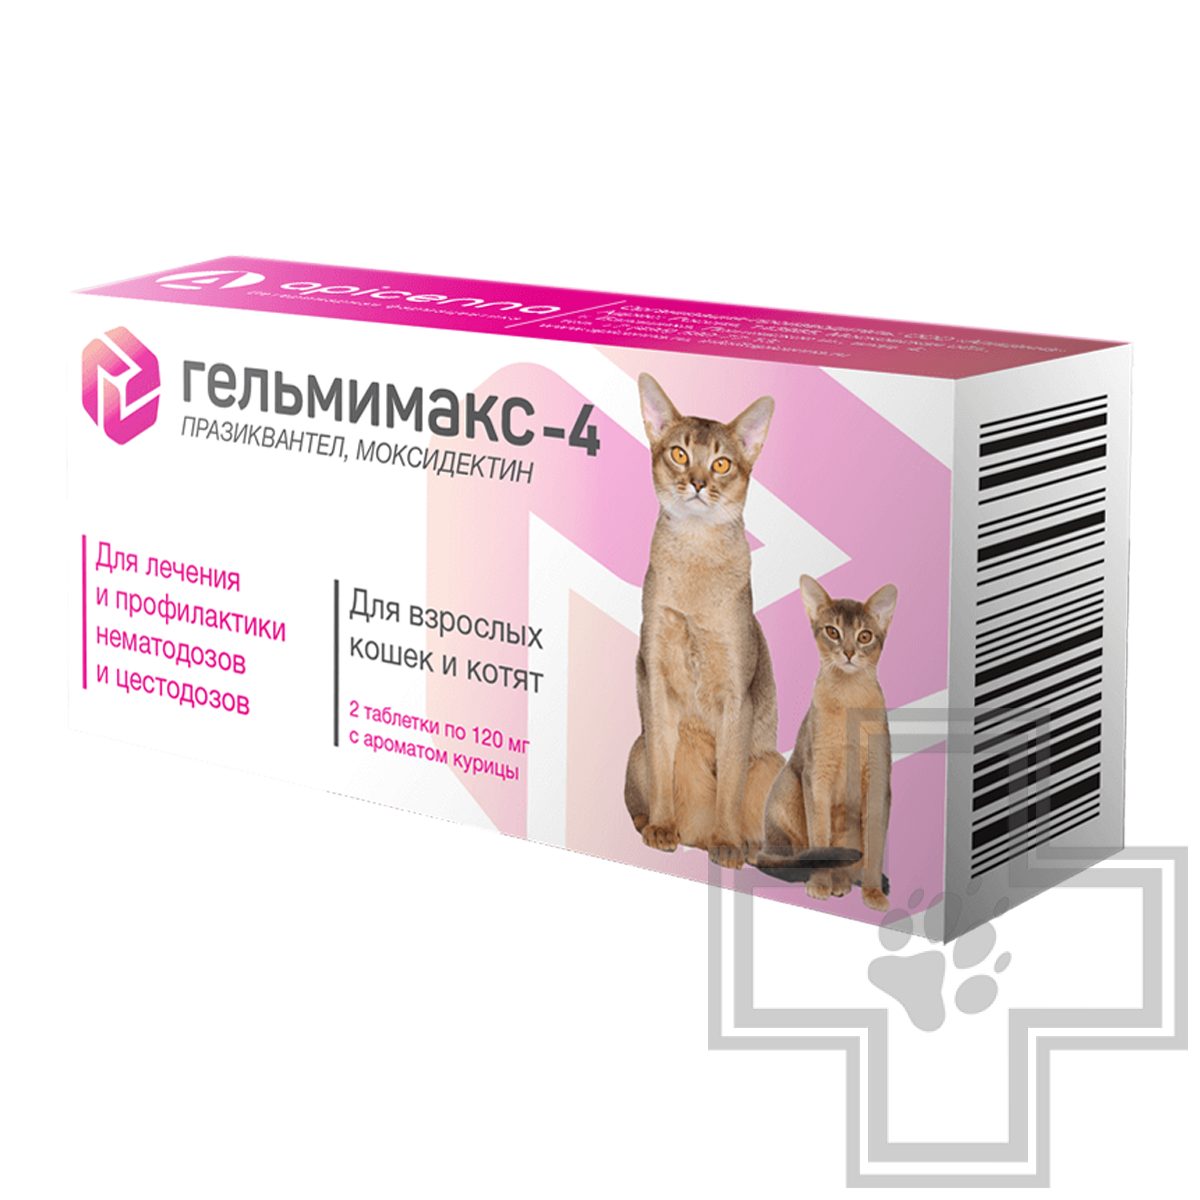 Купить Гельмимакс-4 от глистов для кошек и котят - доставка, цена и наличие  в интернет-магазине и аптеках Доктор Вет